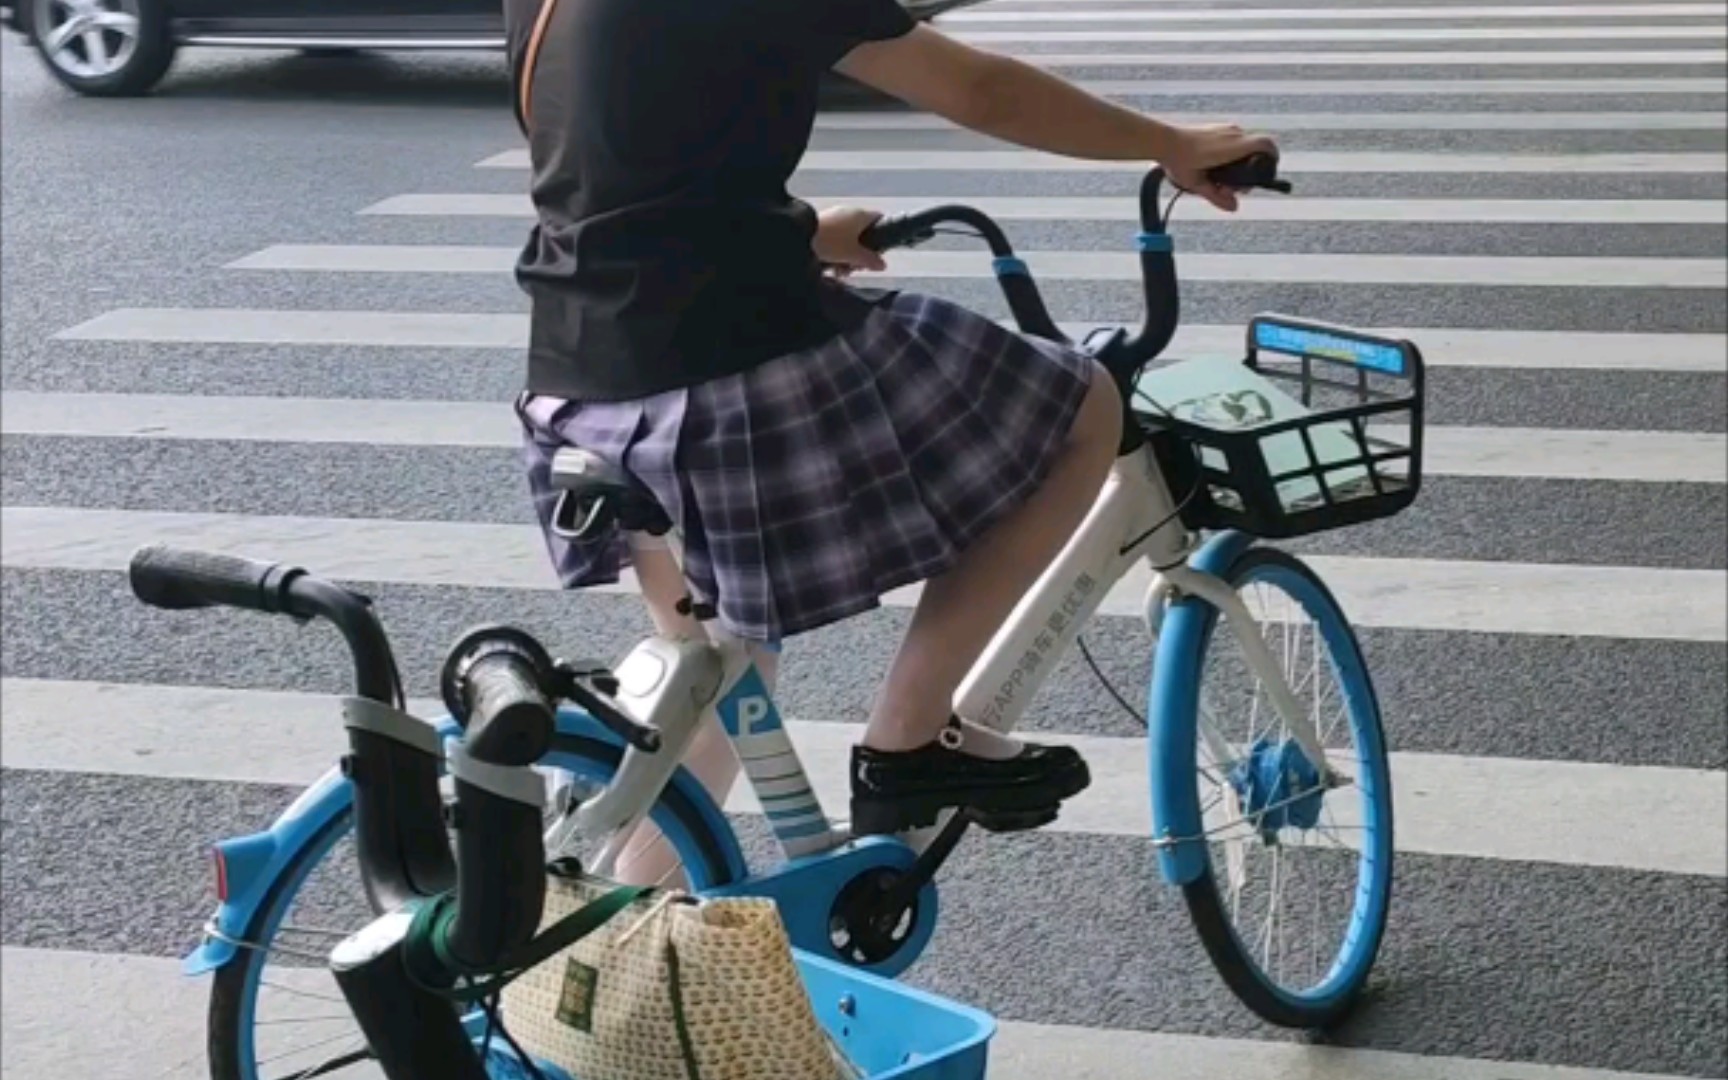 美女穿超短裤骑单车jk图片